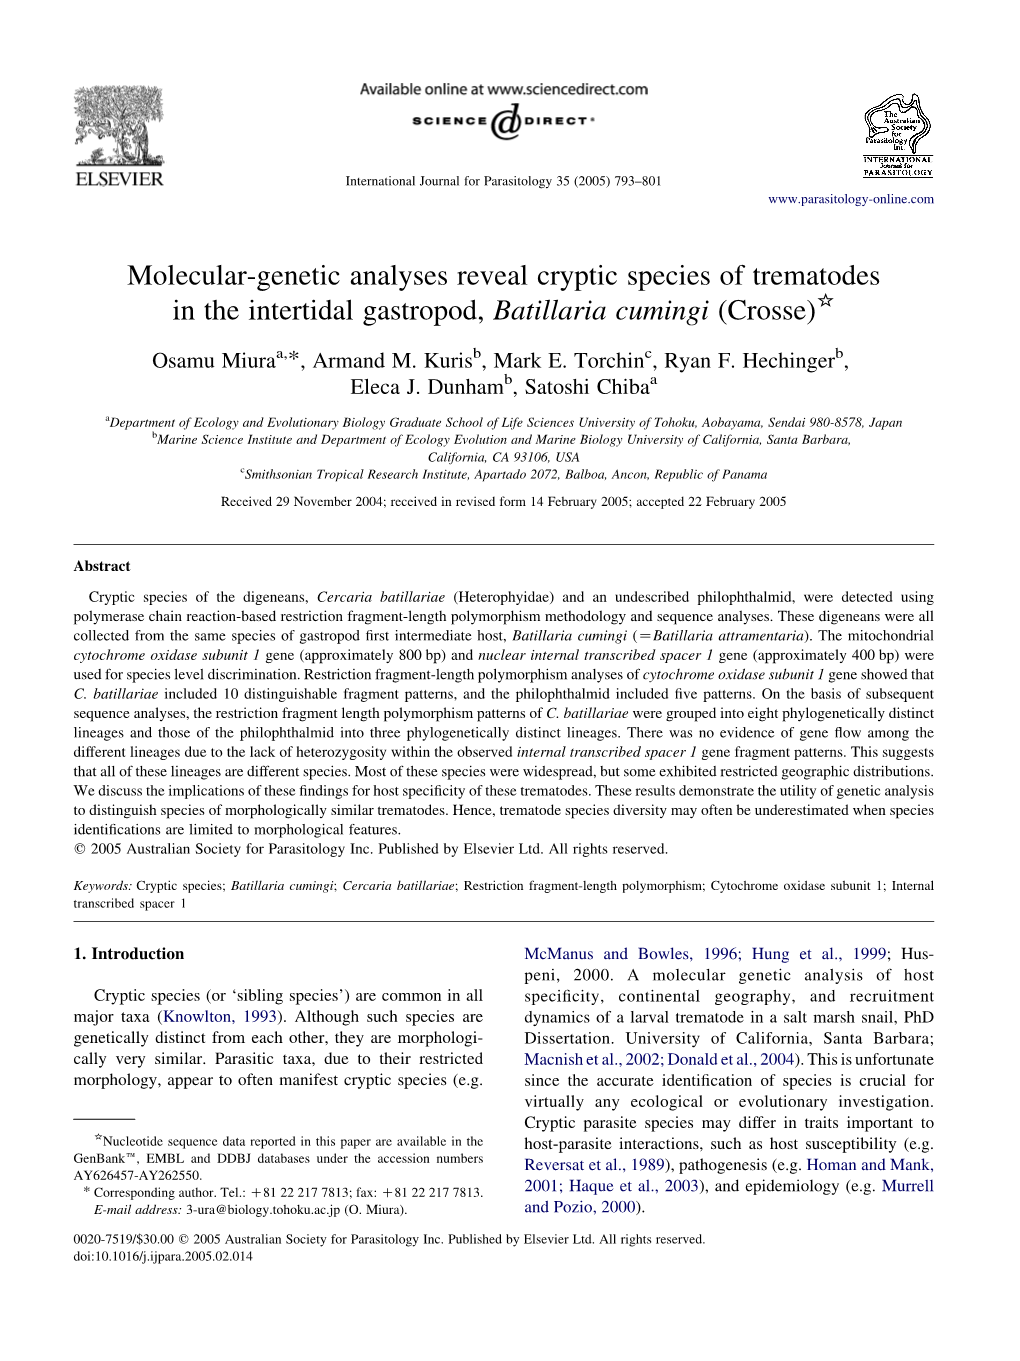 Molecular-Genetic Analyses Reveal Cryptic Species of Trematodes in the Intertidal Gastropod, Batillaria Cumingi (Crosse)*